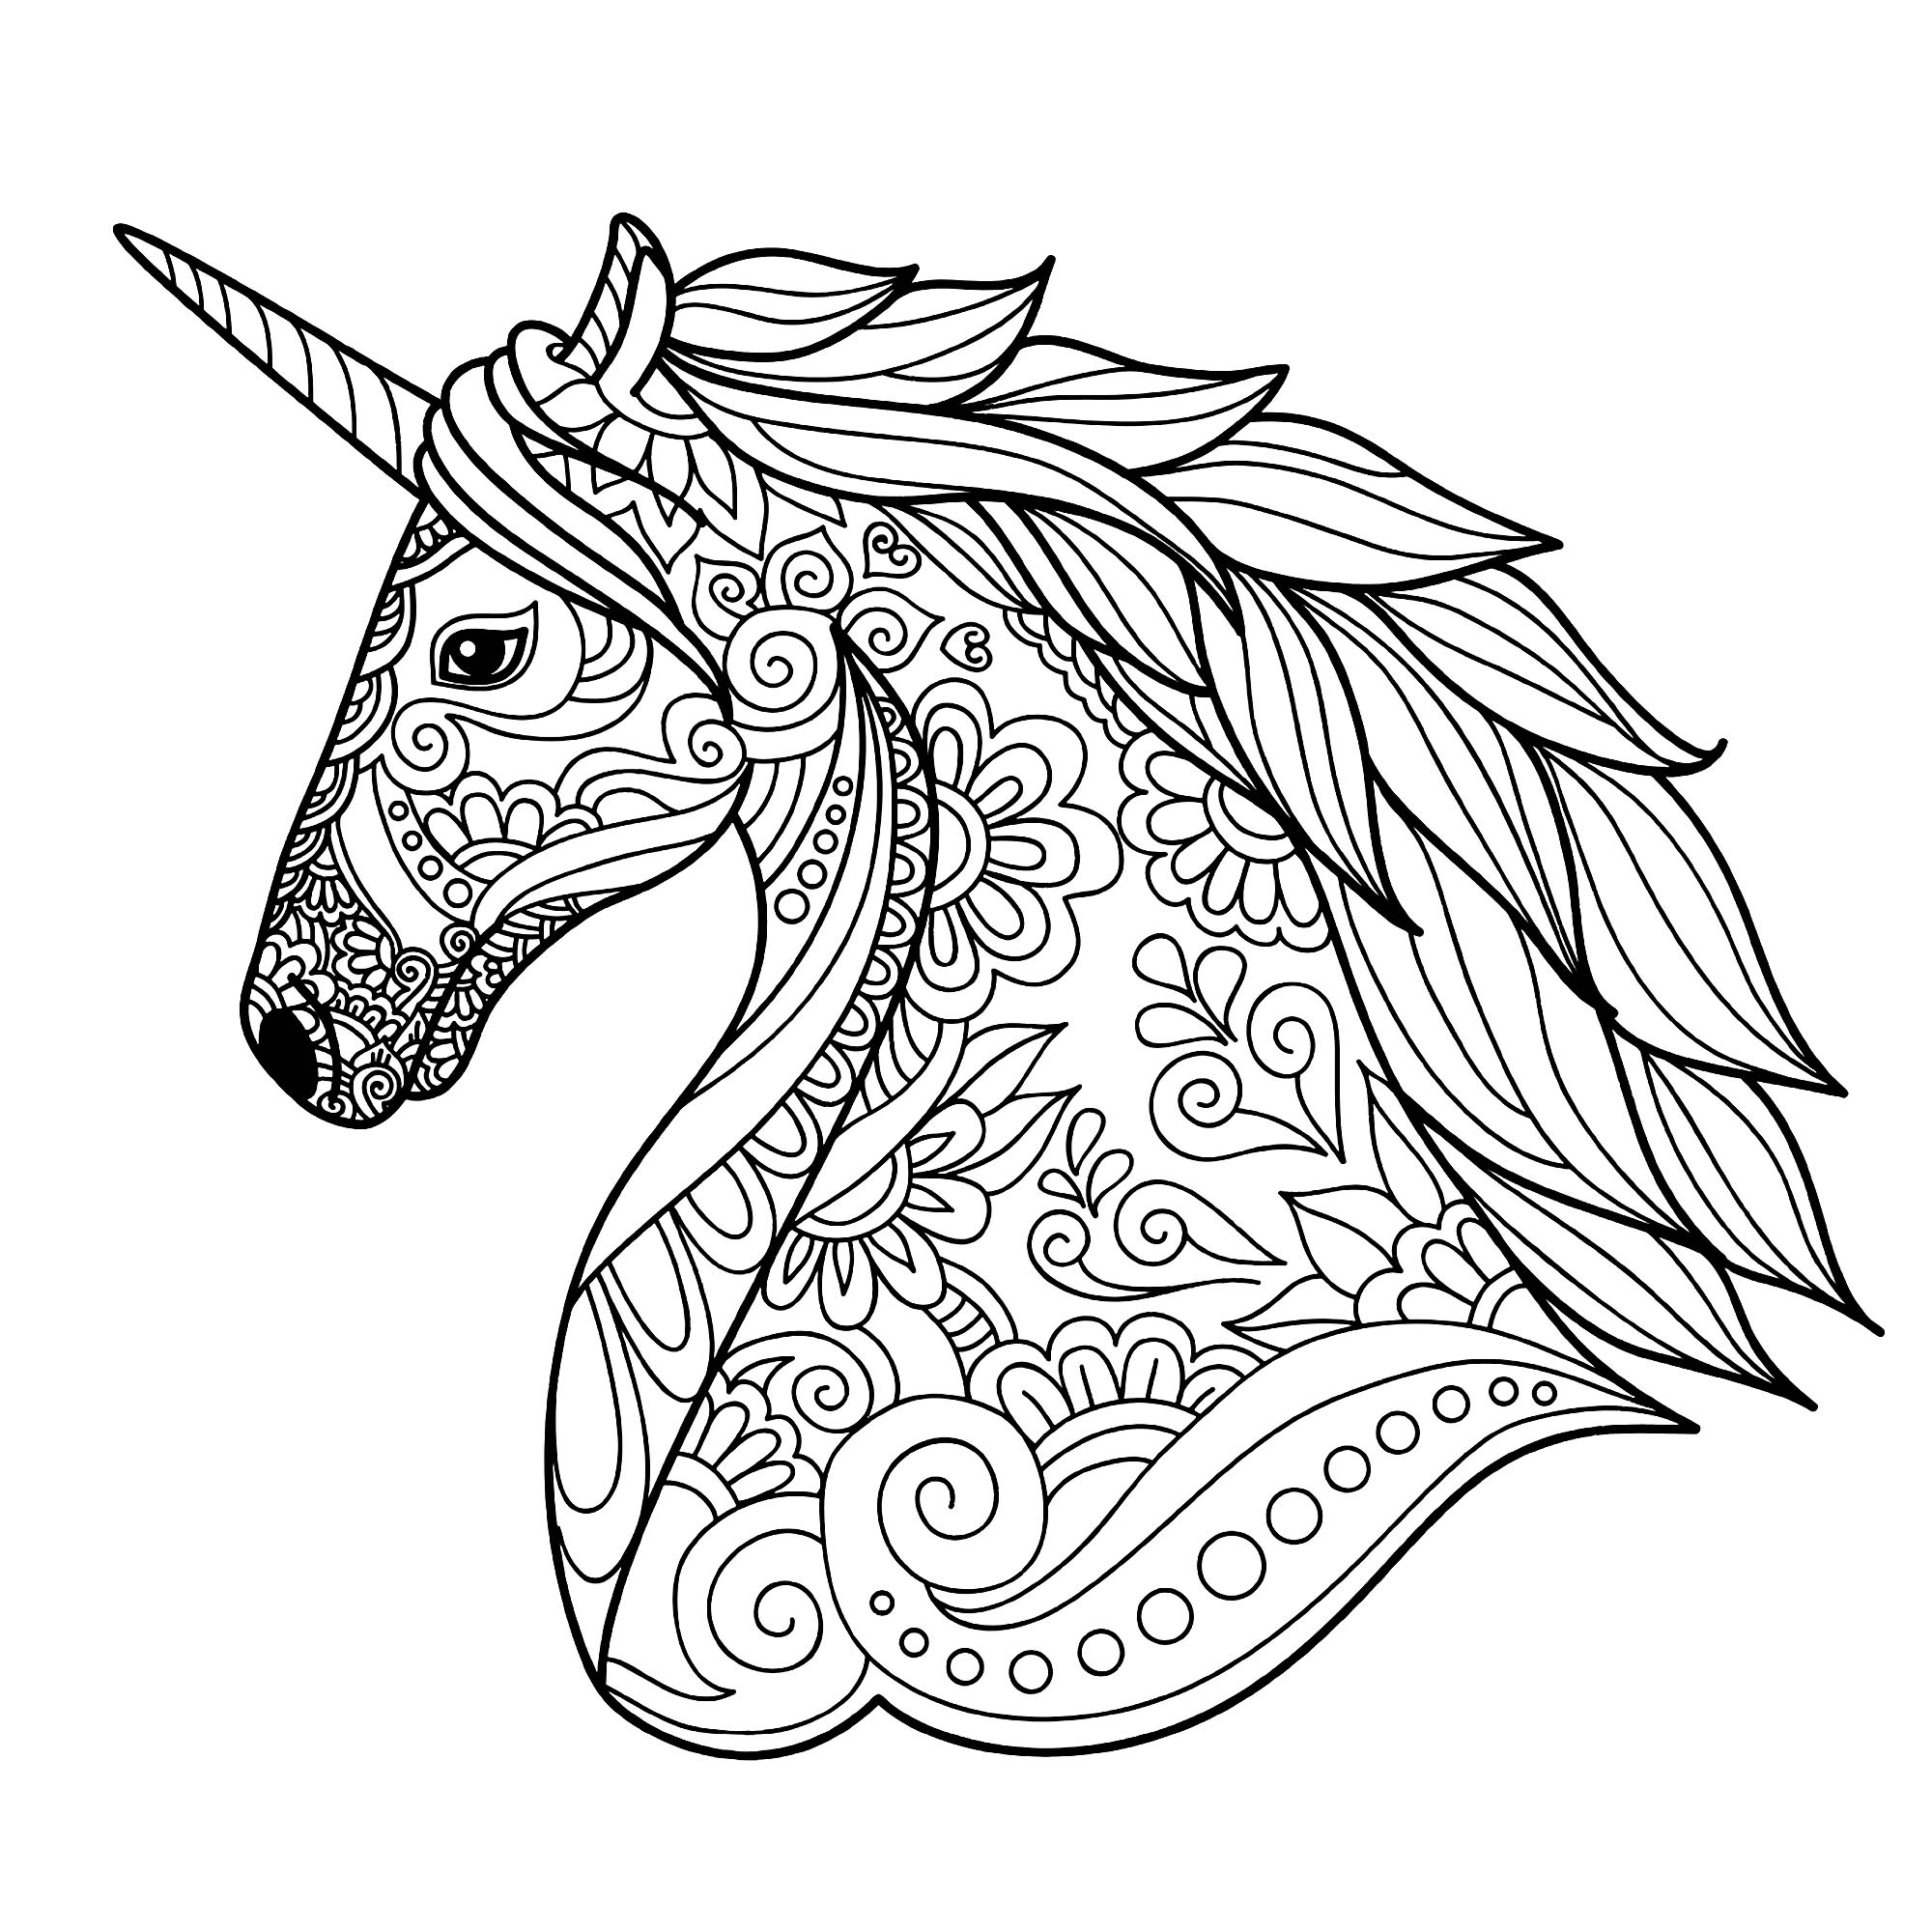 Disegni da colorare per adulti : Unicorni - 2, Fonte : 123rf   Artista : Tierre3012